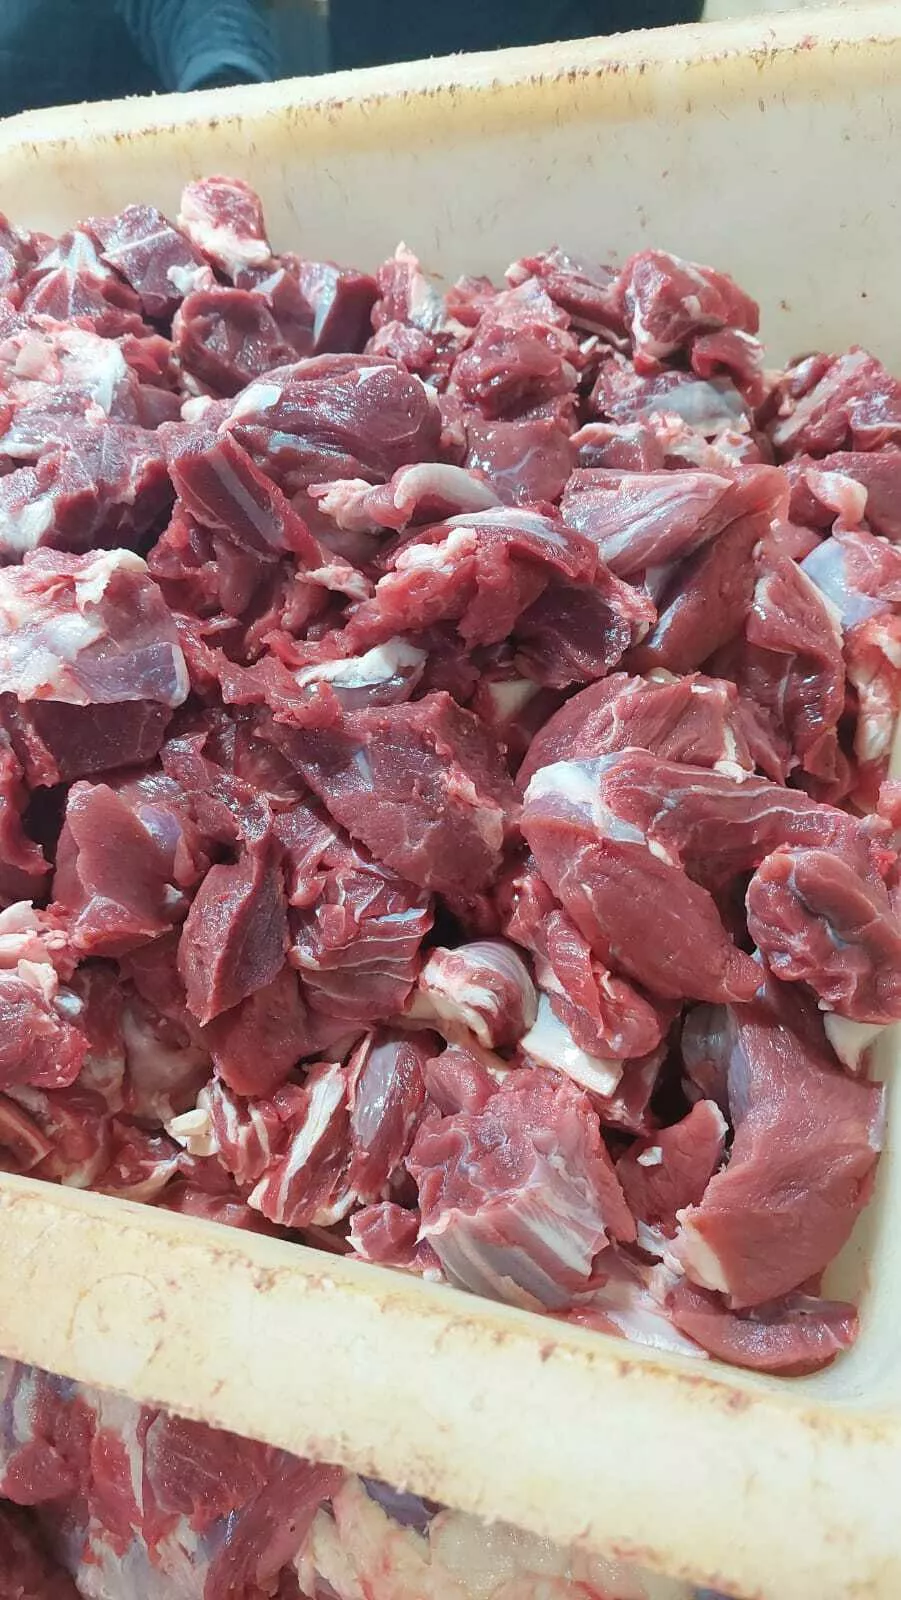 мясо говядины б/к отпроизводителя Гуляш в Барнауле и Алтайском крае